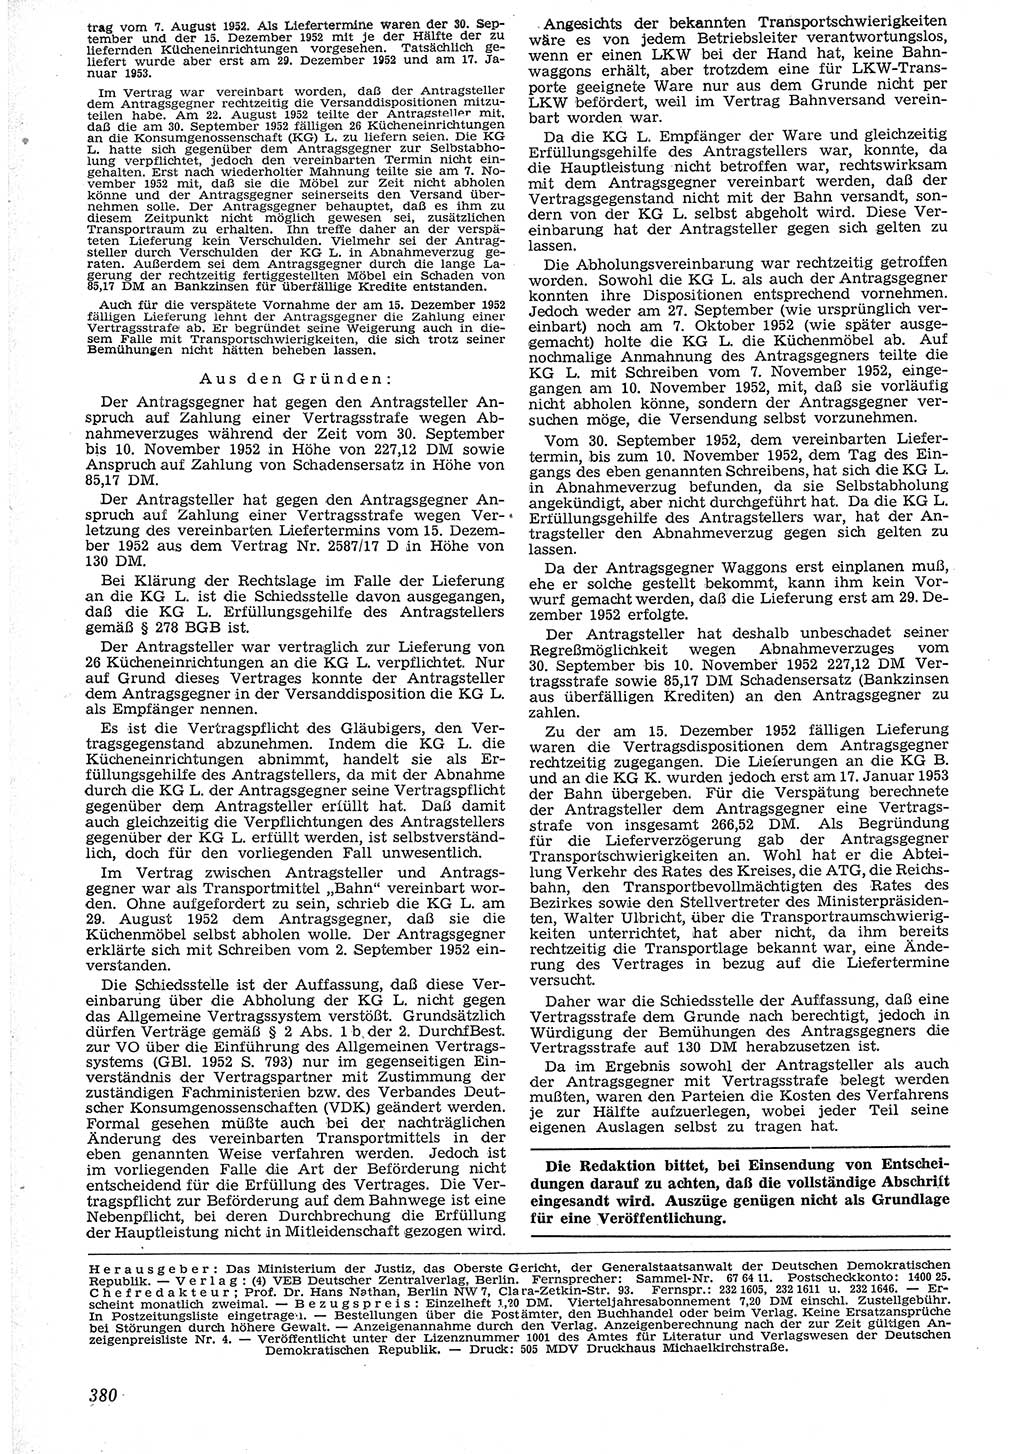 Neue Justiz (NJ), Zeitschrift für Recht und Rechtswissenschaft [Deutsche Demokratische Republik (DDR)], 7. Jahrgang 1953, Seite 380 (NJ DDR 1953, S. 380)